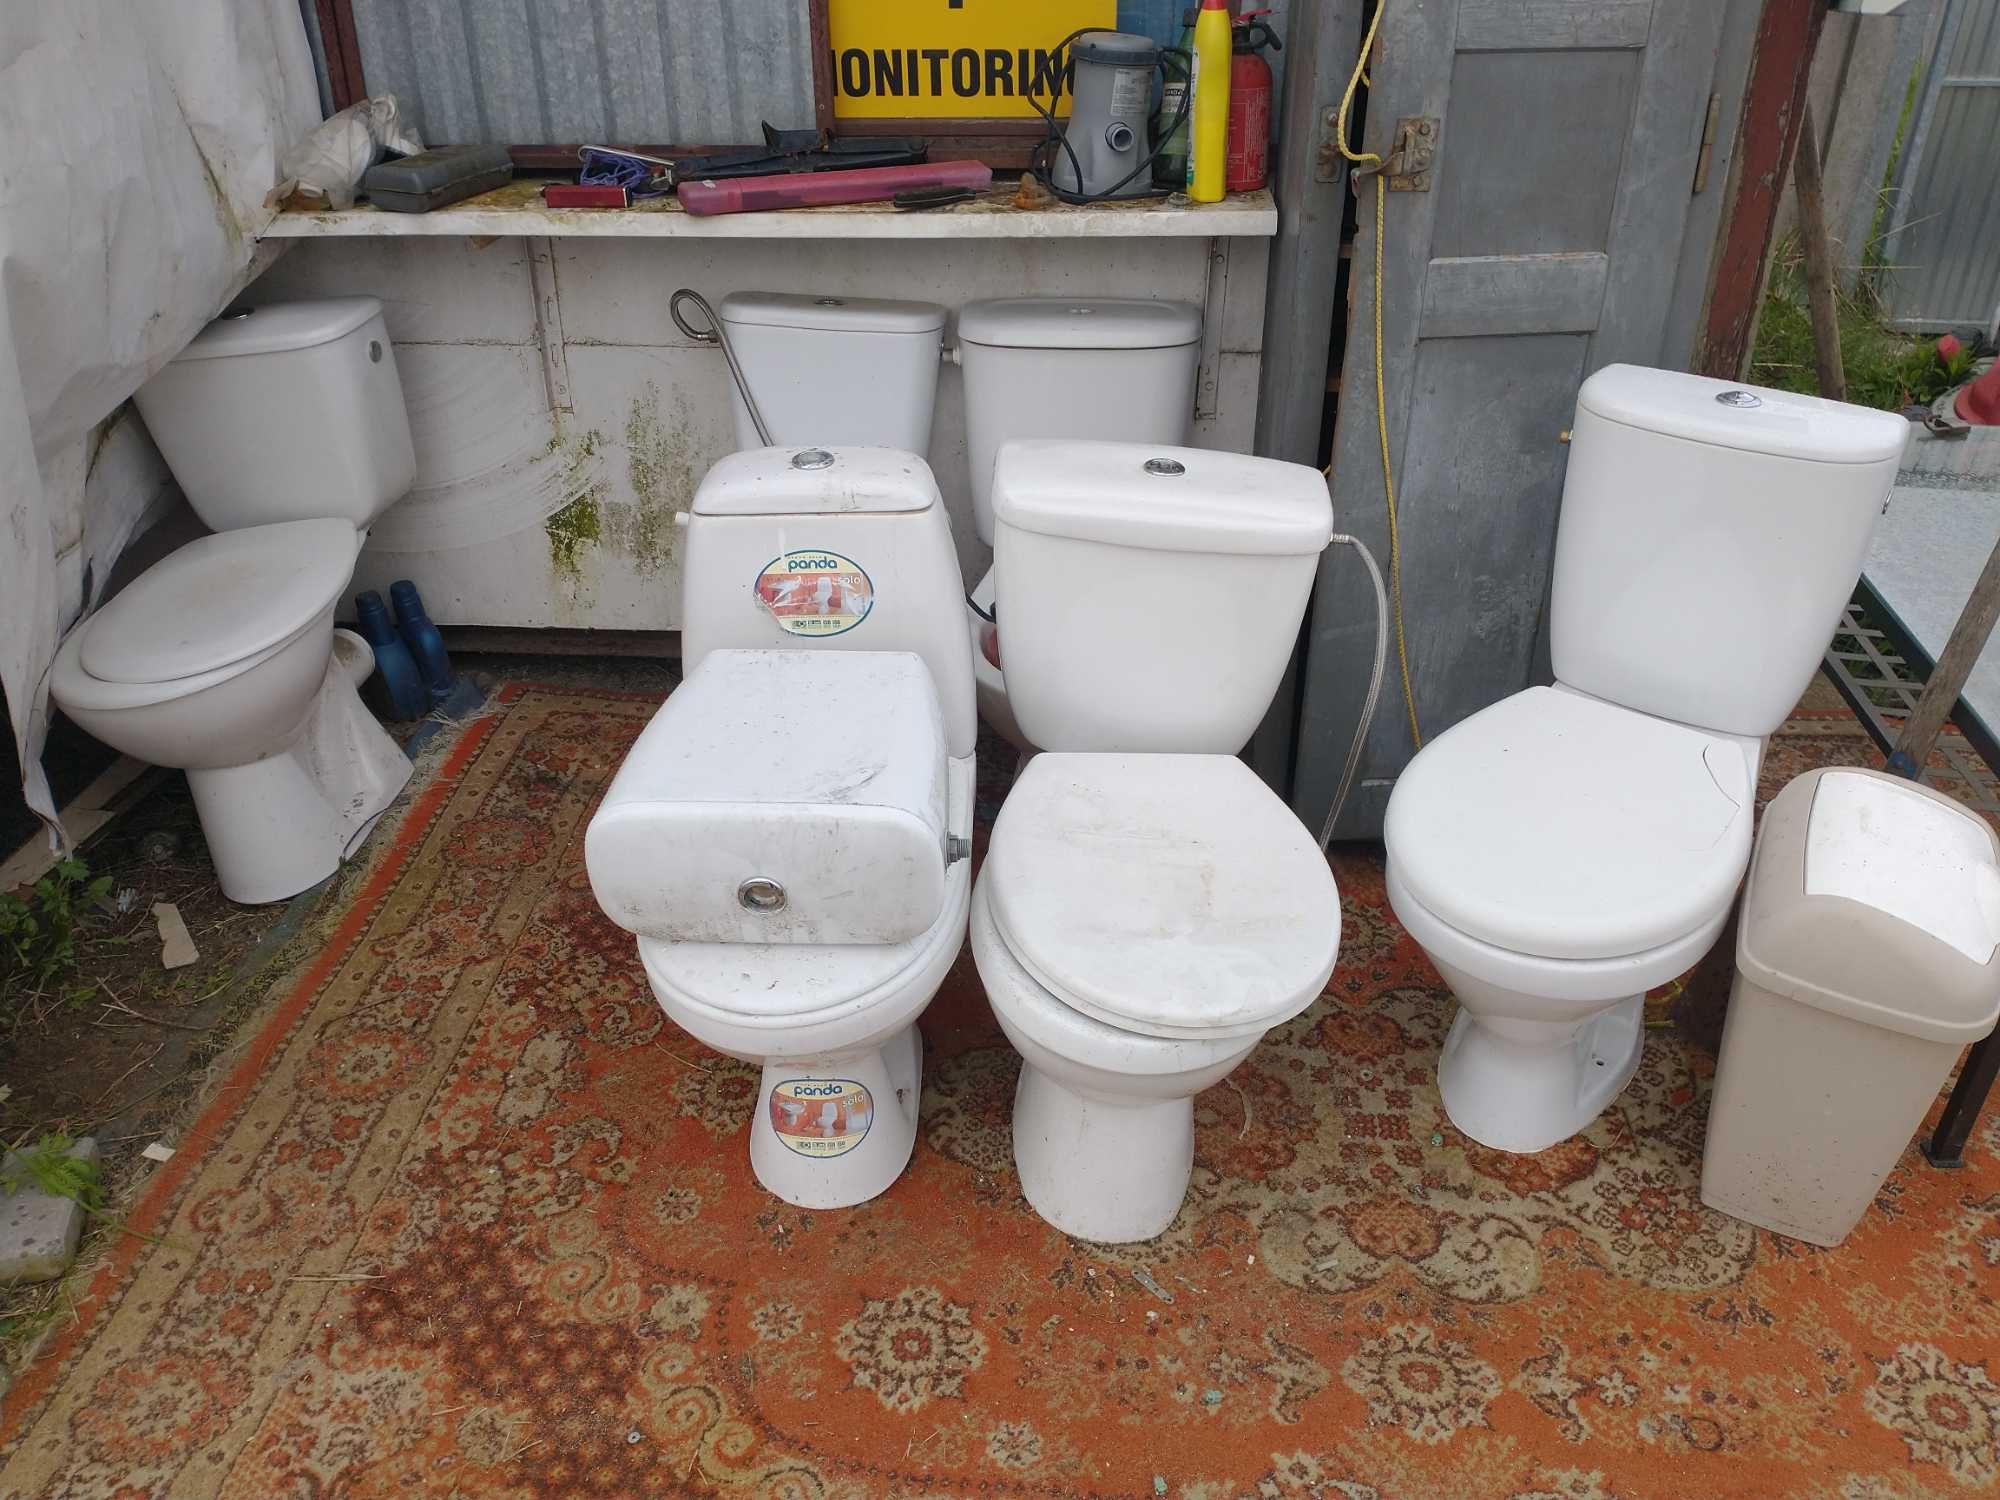 Toaleta Sedes sprawny bez uszkodzeń i pęknięć - możliwy transport